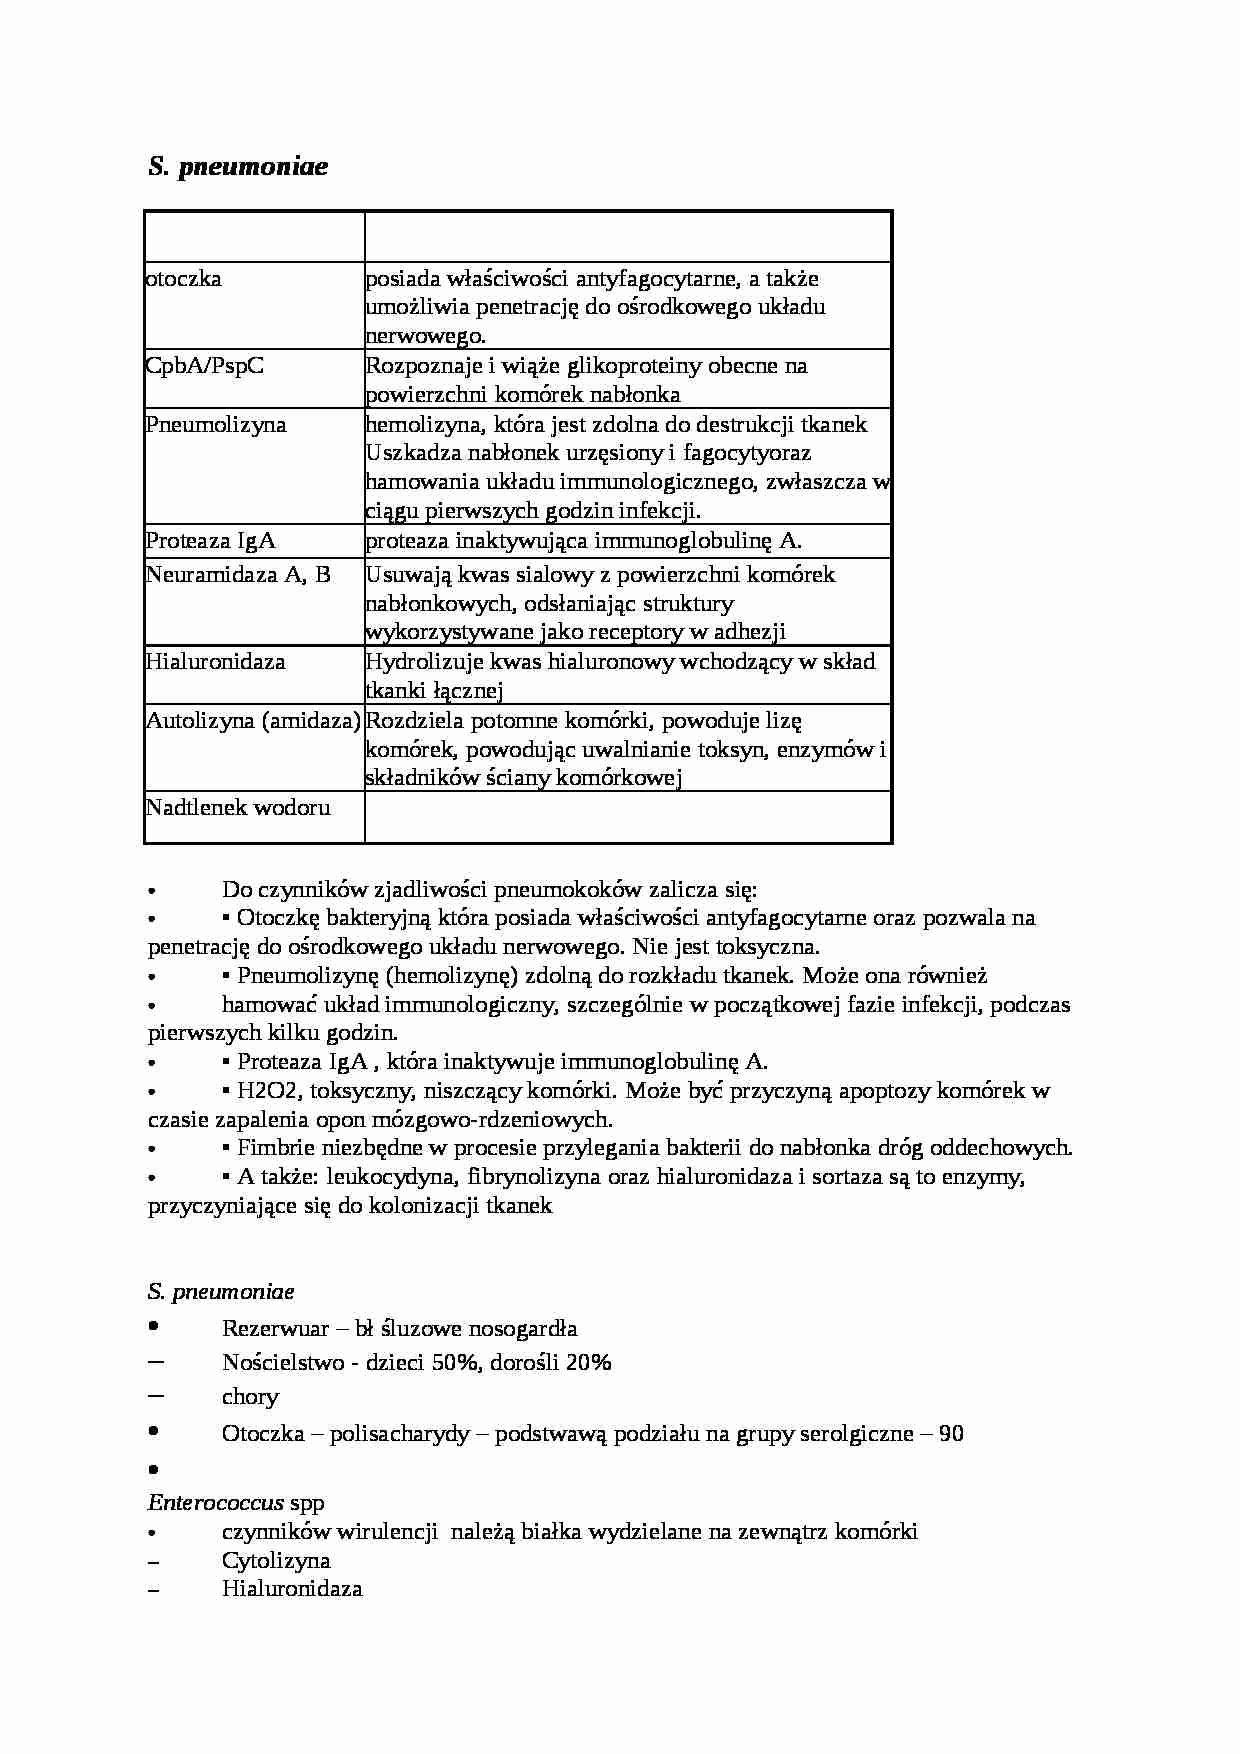 S. pneumoniae - omówienie - strona 1